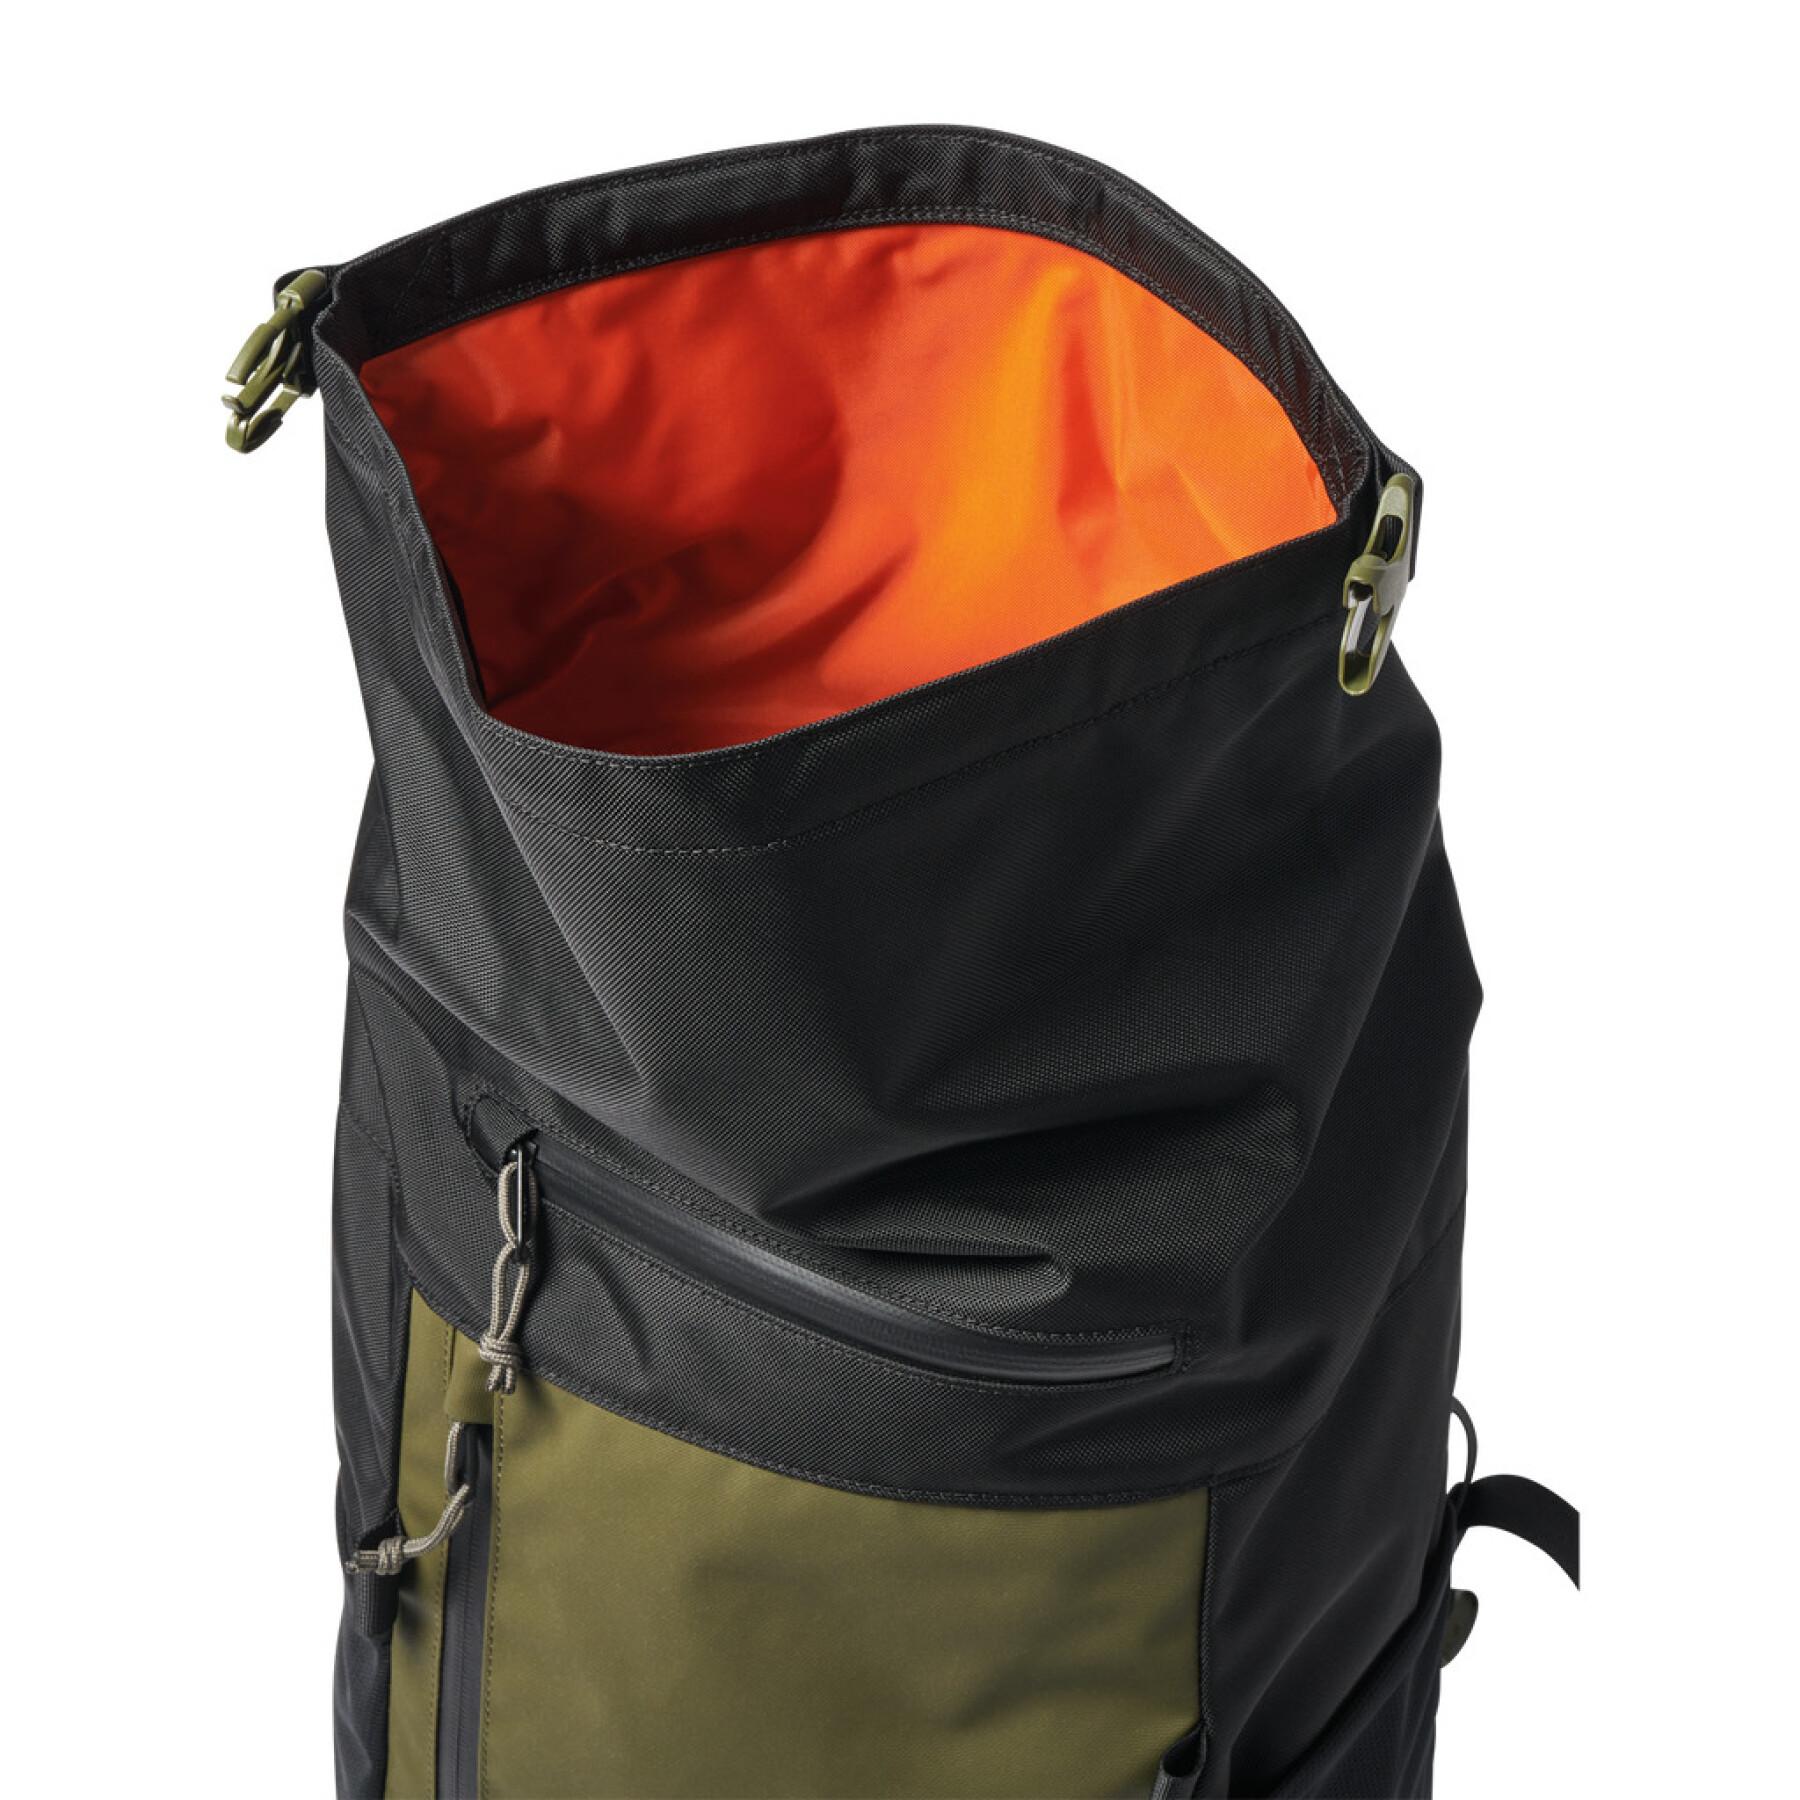 Backpack Roark Passenger 2.0